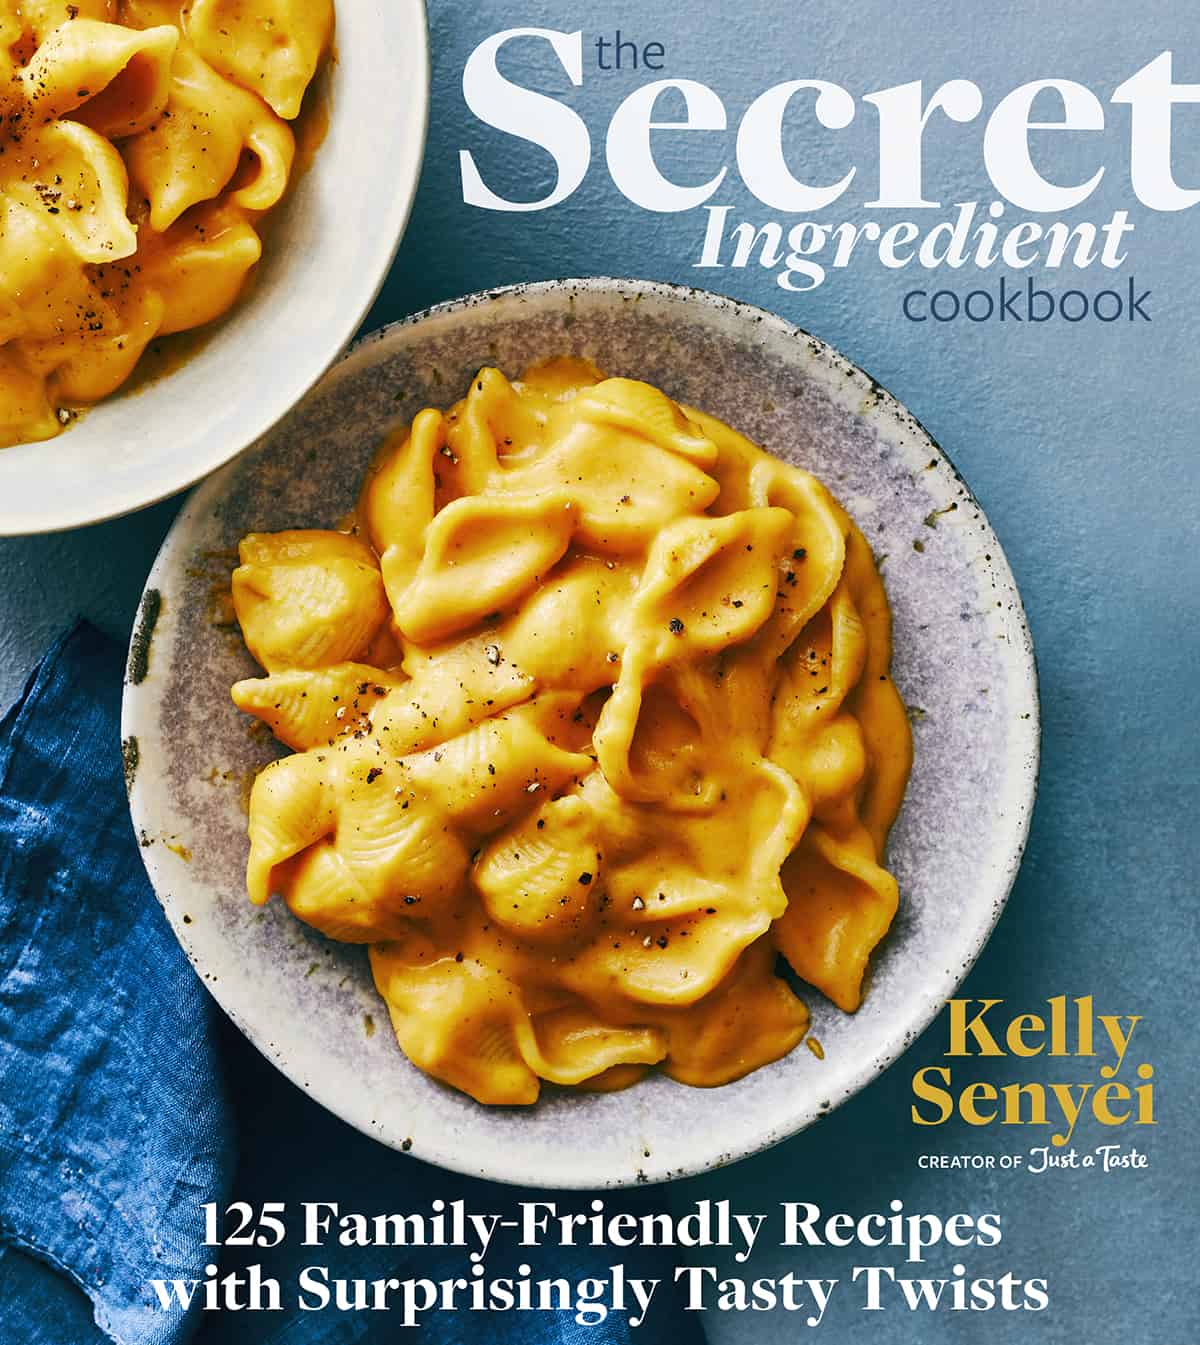 The Secret Ingredient Cookbook by Kelly Senyei